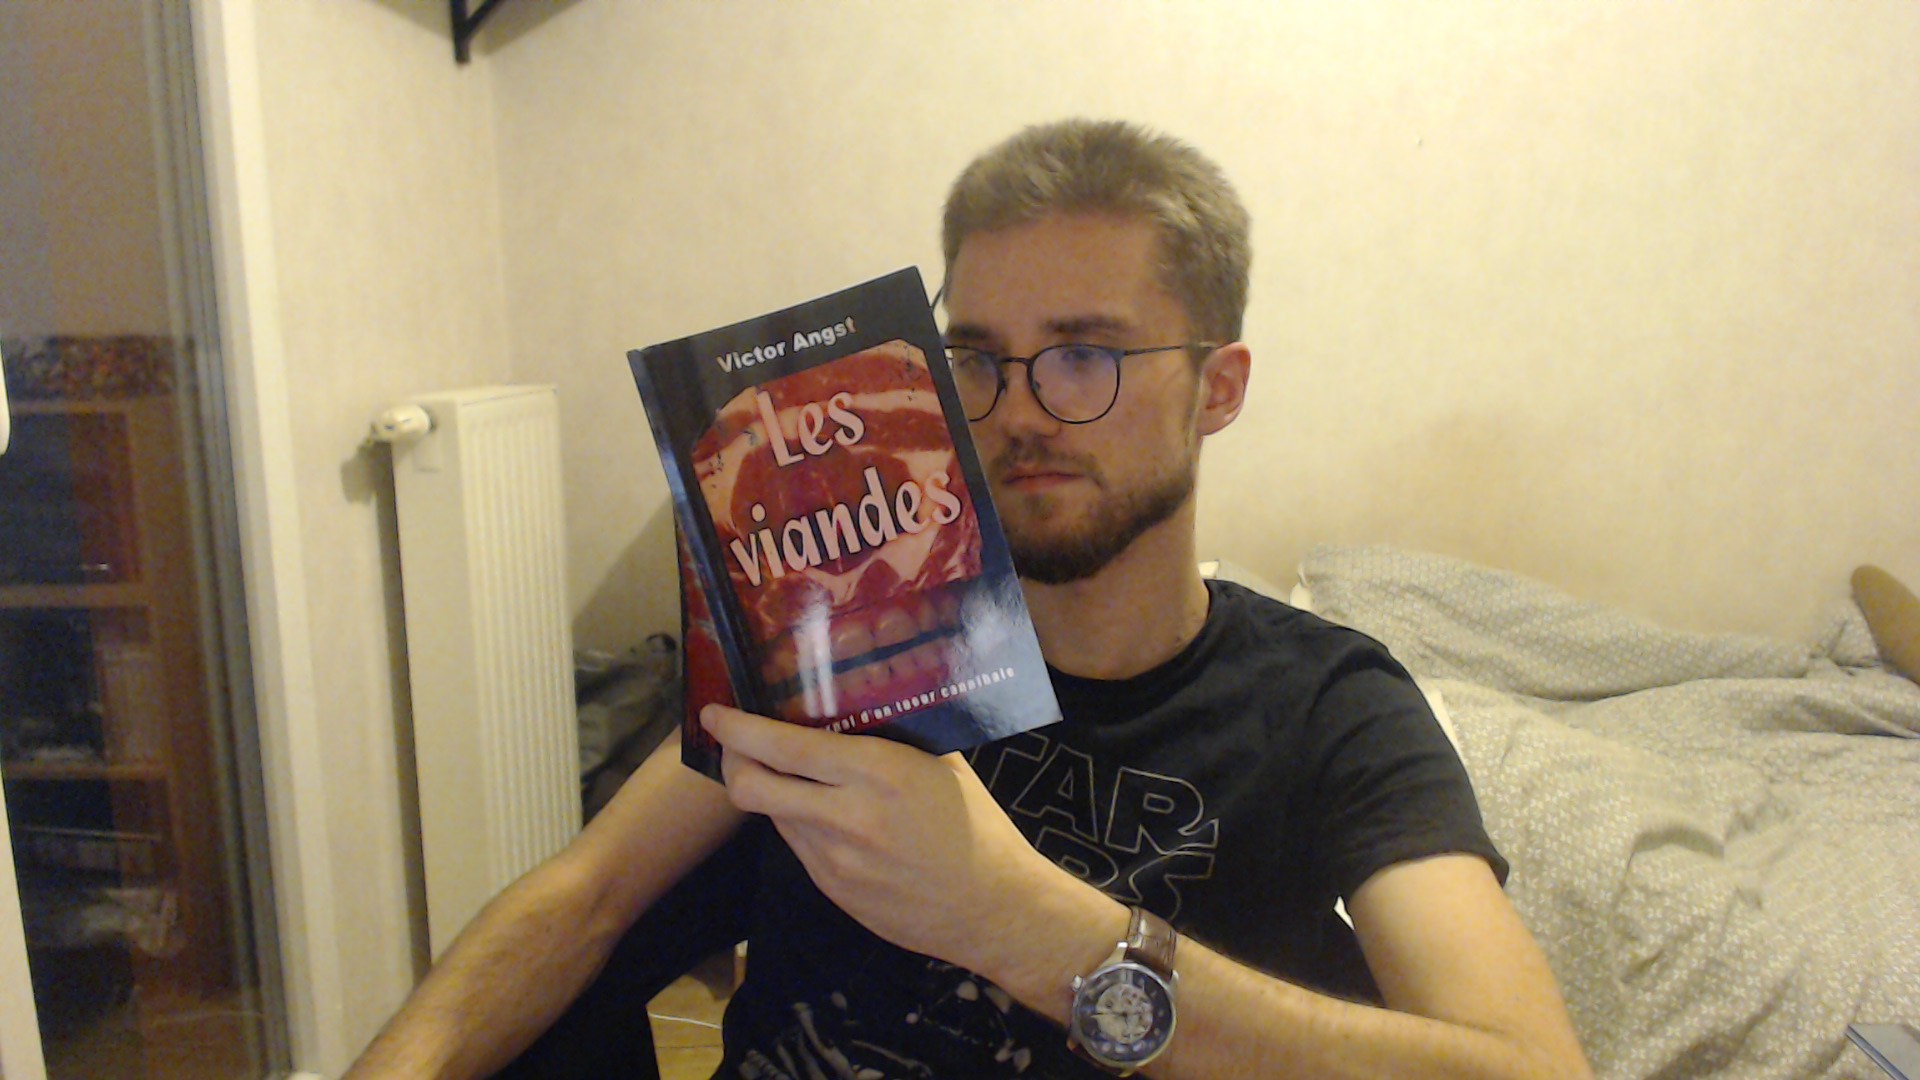 J'ai lu "Les Viandes : Journal d'un tueur cannibale" de Victor Angst